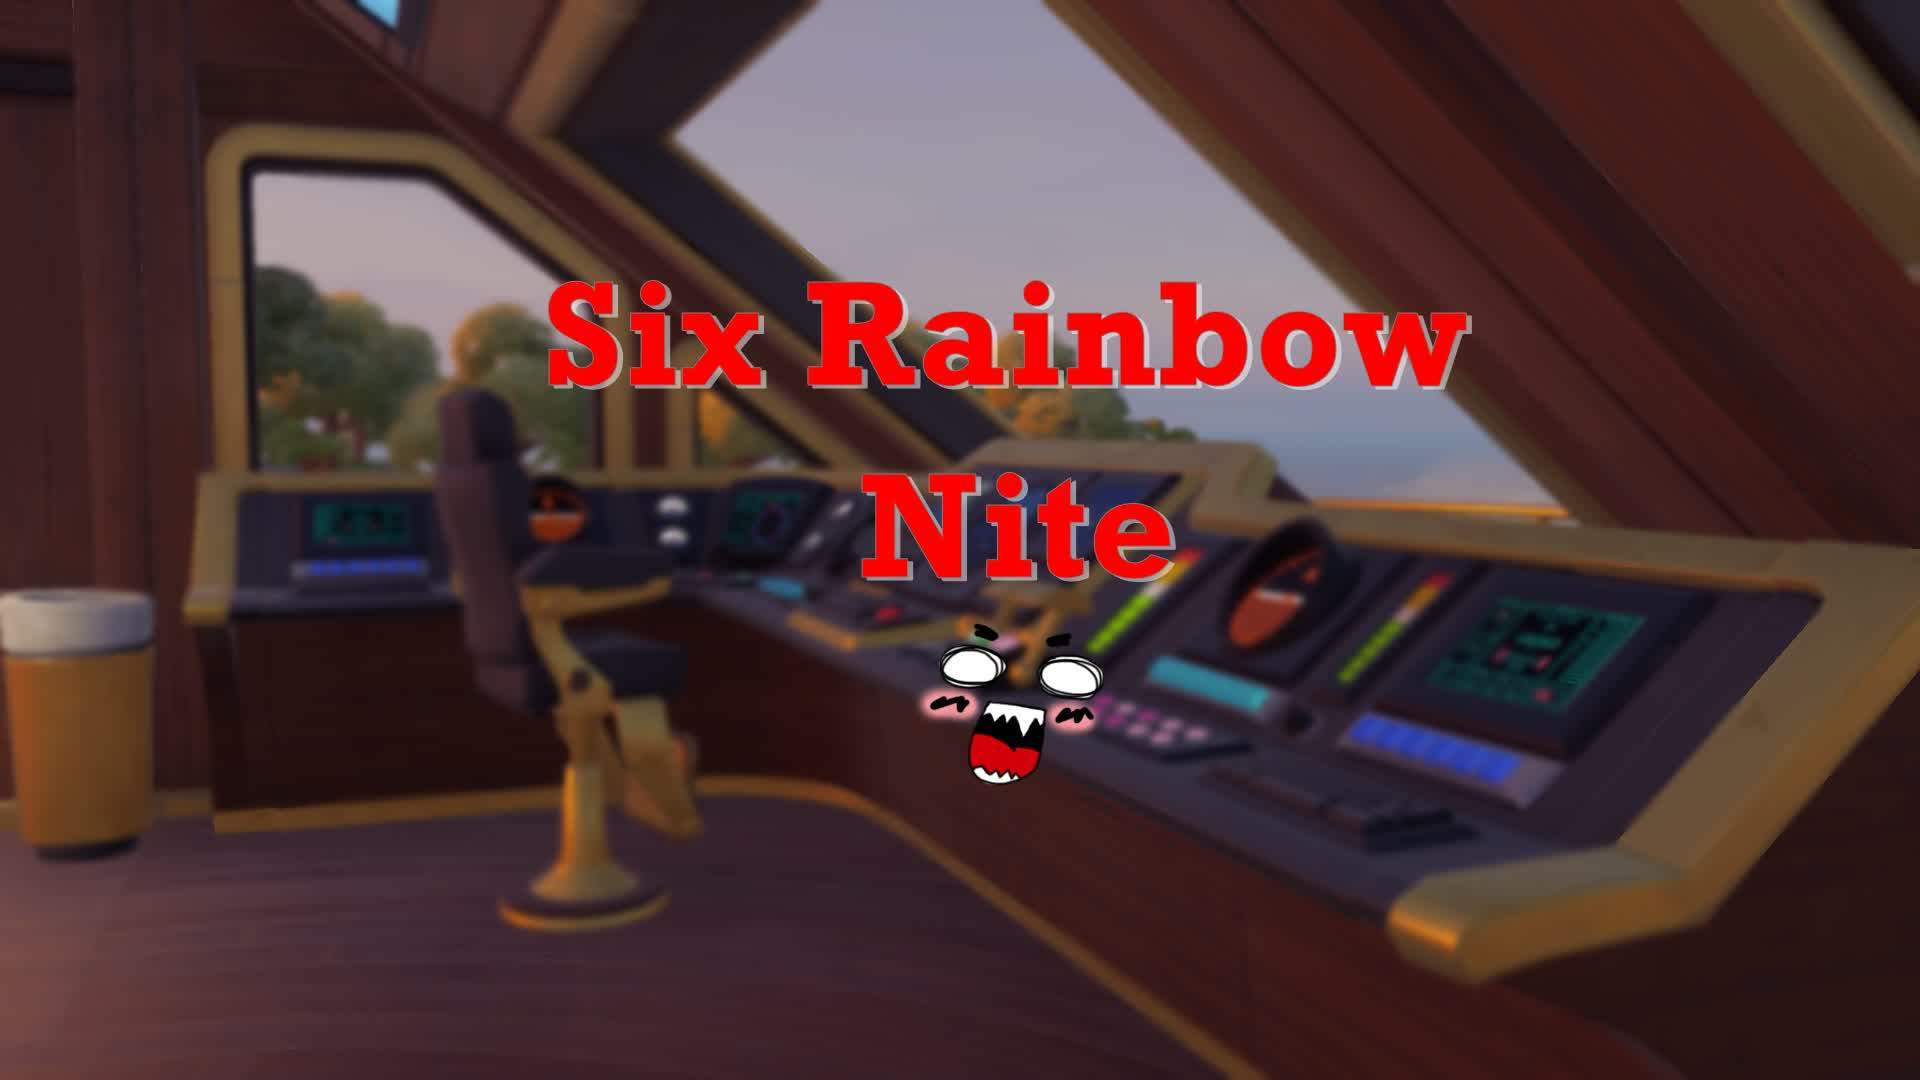 Six Rainbow Nite